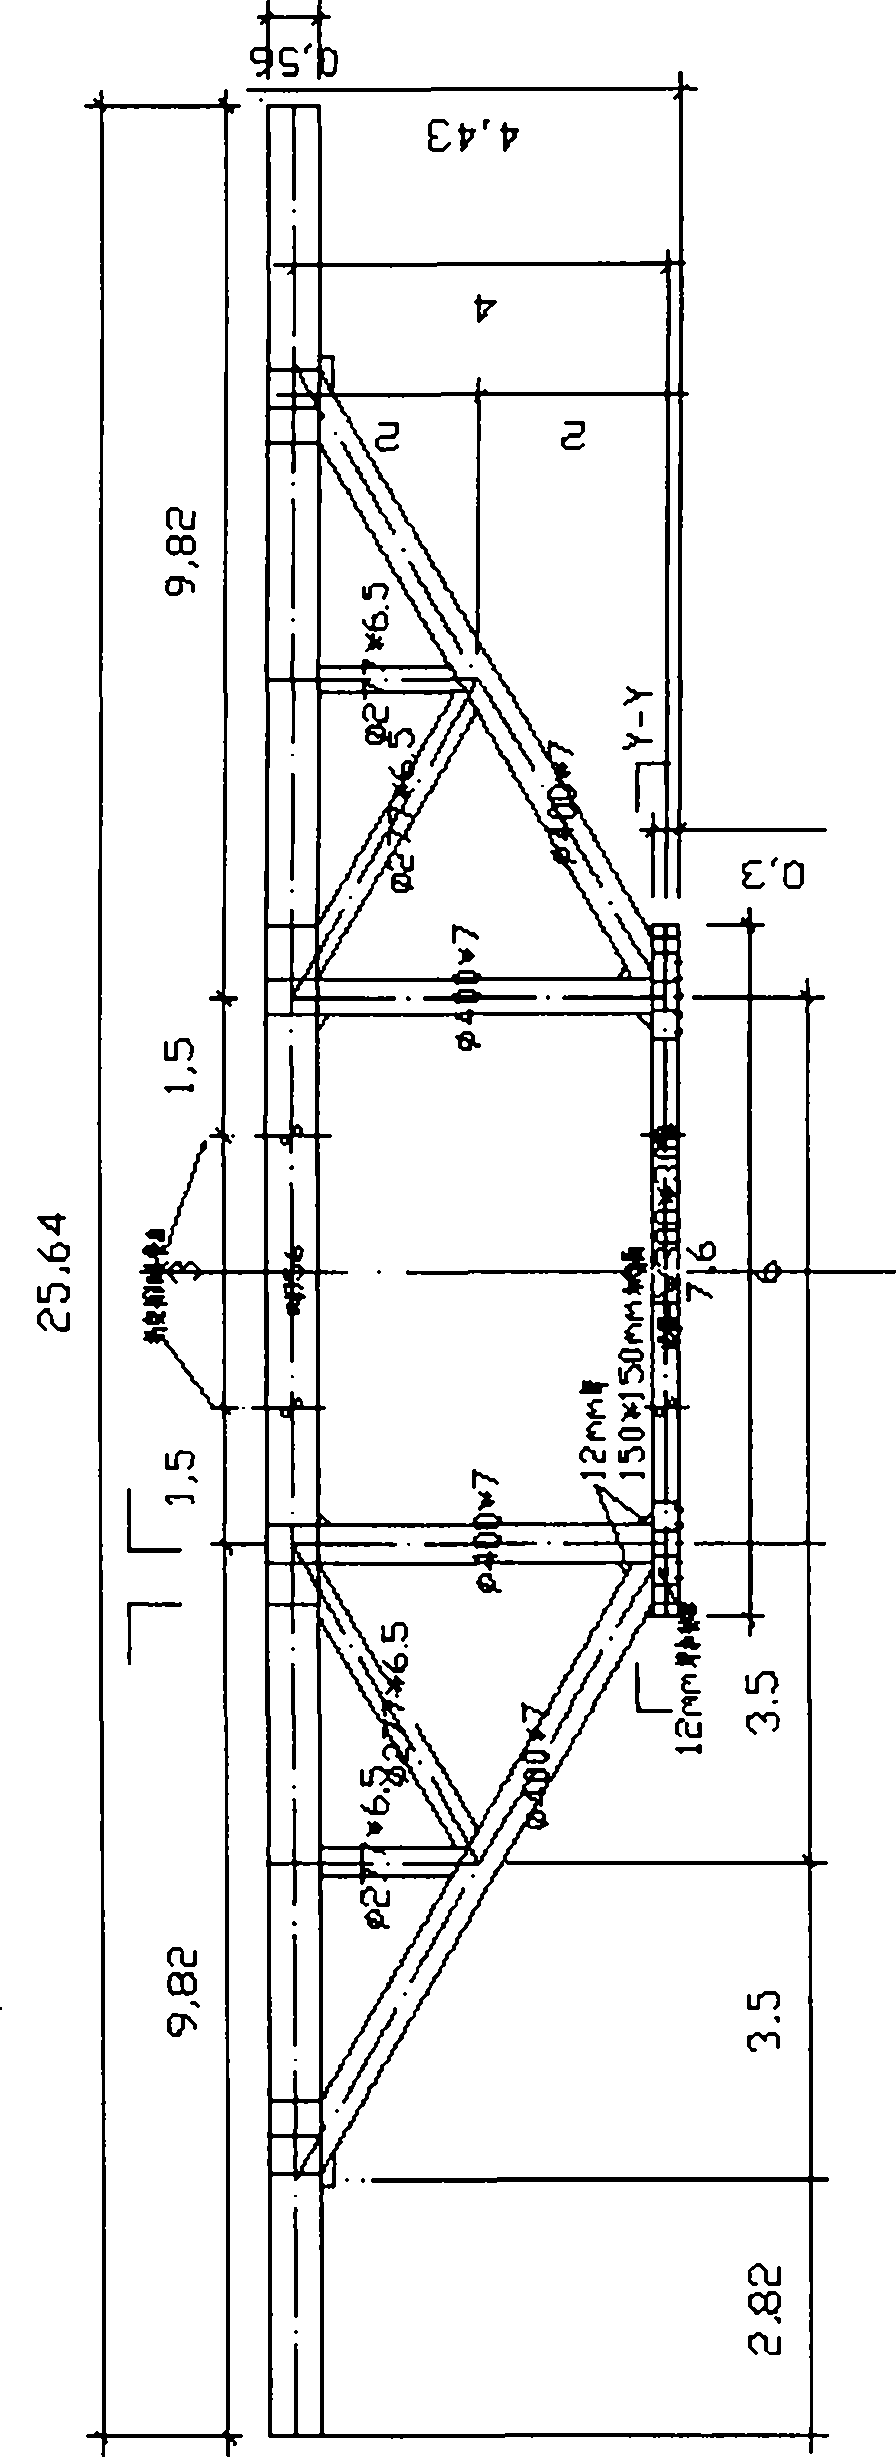 Novel assembling method for bent cap bearing frame